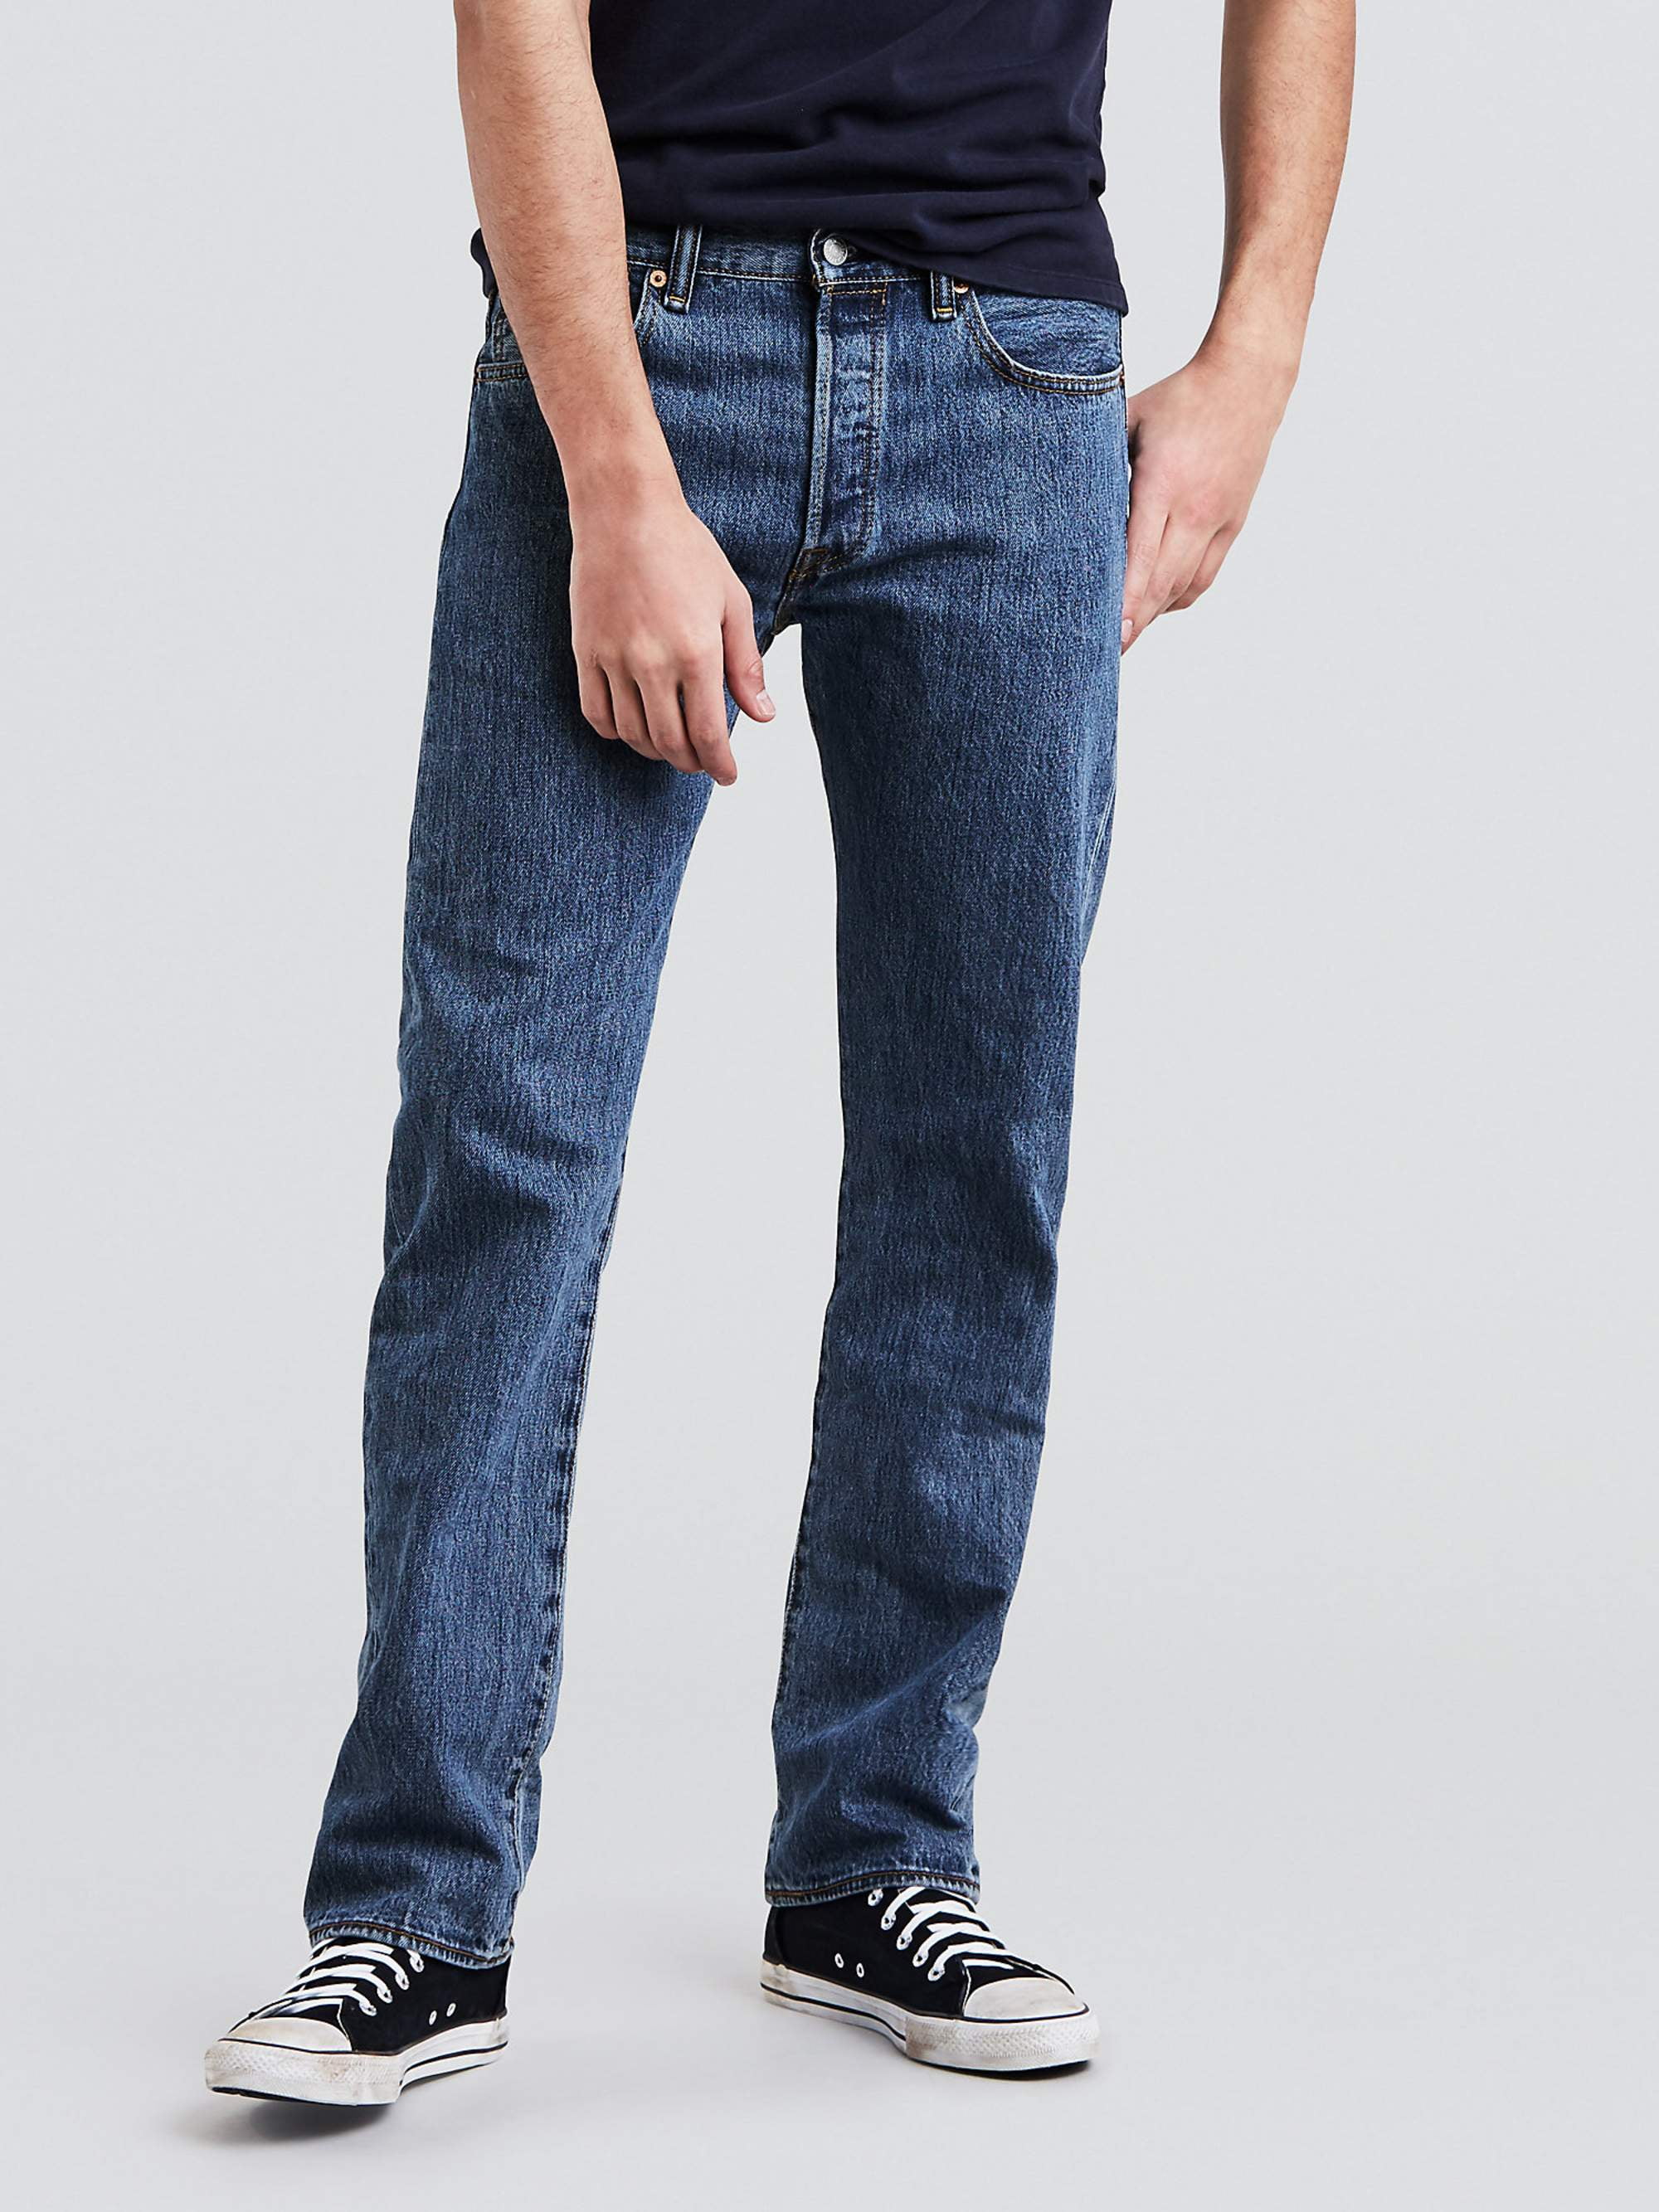 succes Bandiet trog Levi's Men's 501 Original Fit Jeans - Walmart.com